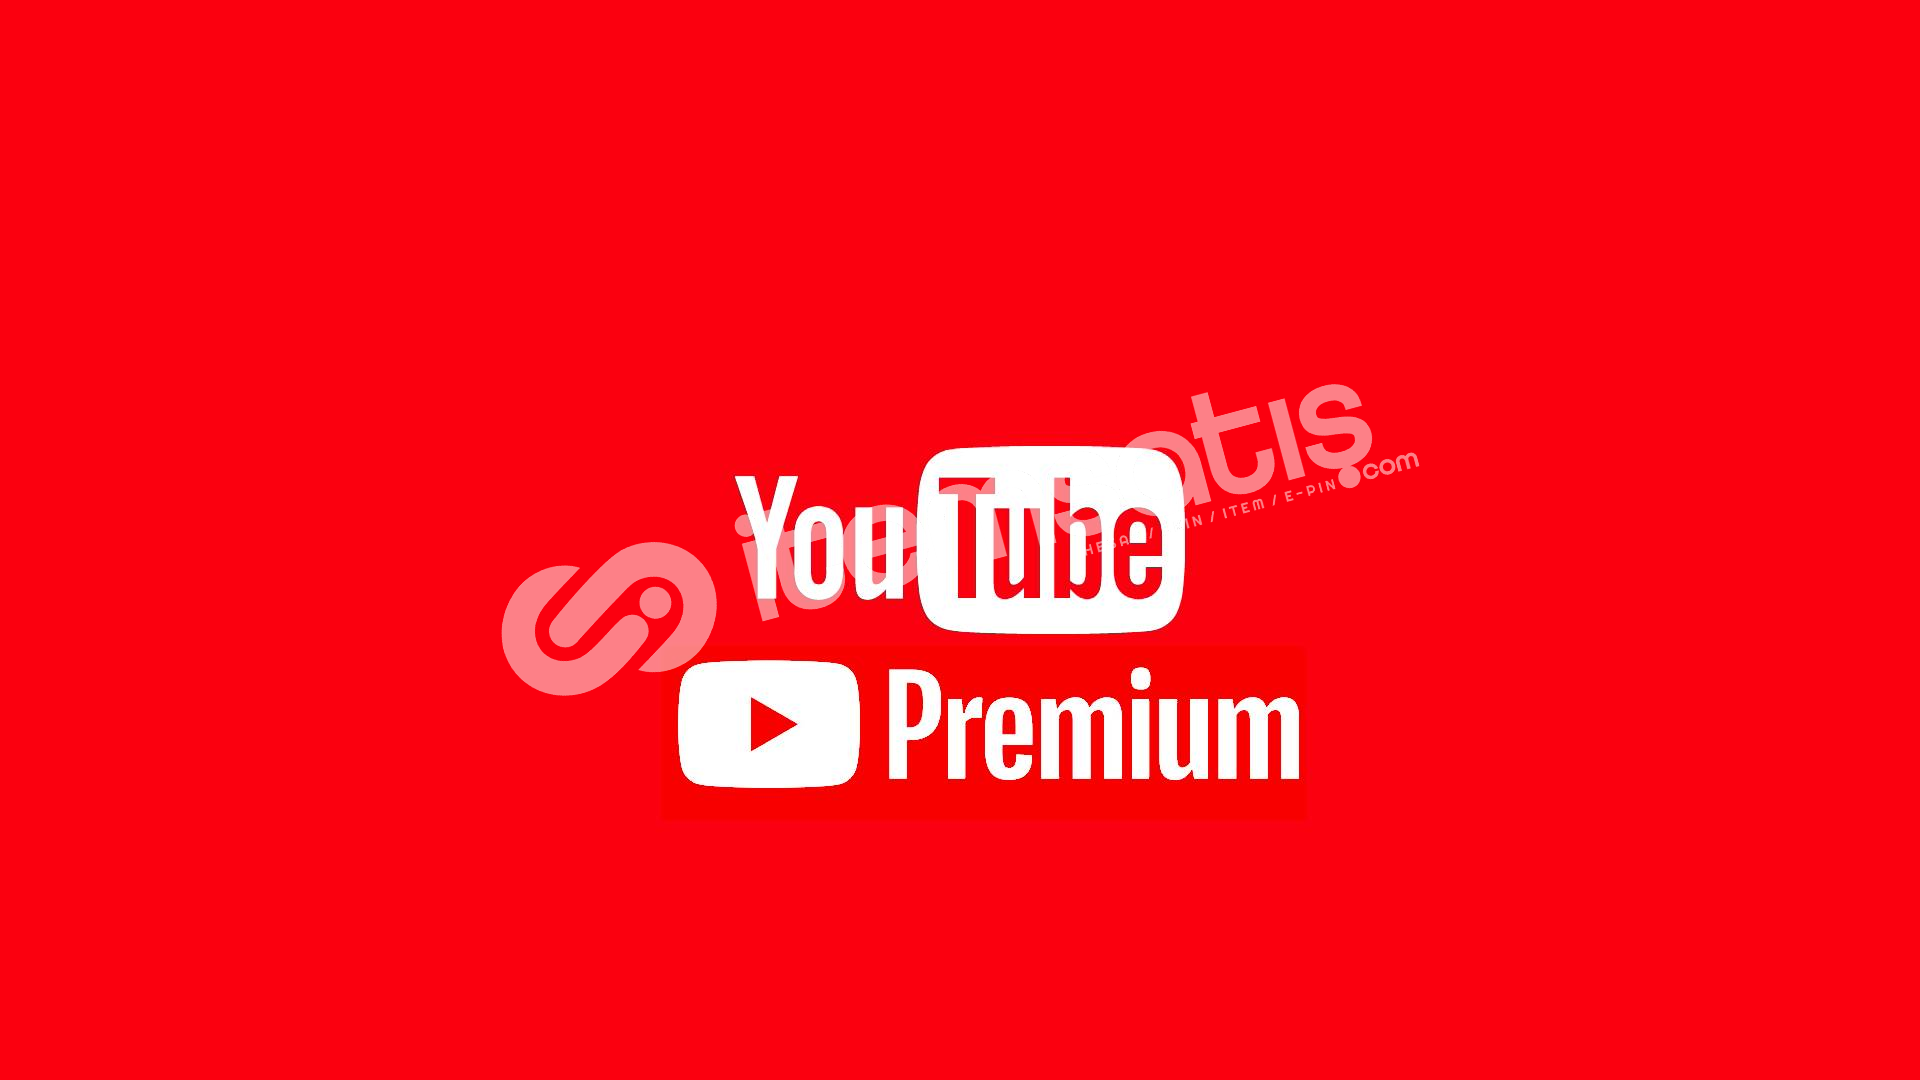 Ютуб премиум без рекламы на андроид последняя. Youtube Premium. Ютуб премиум. Ютуб премиум картинка. Подписка ютуб премиум.